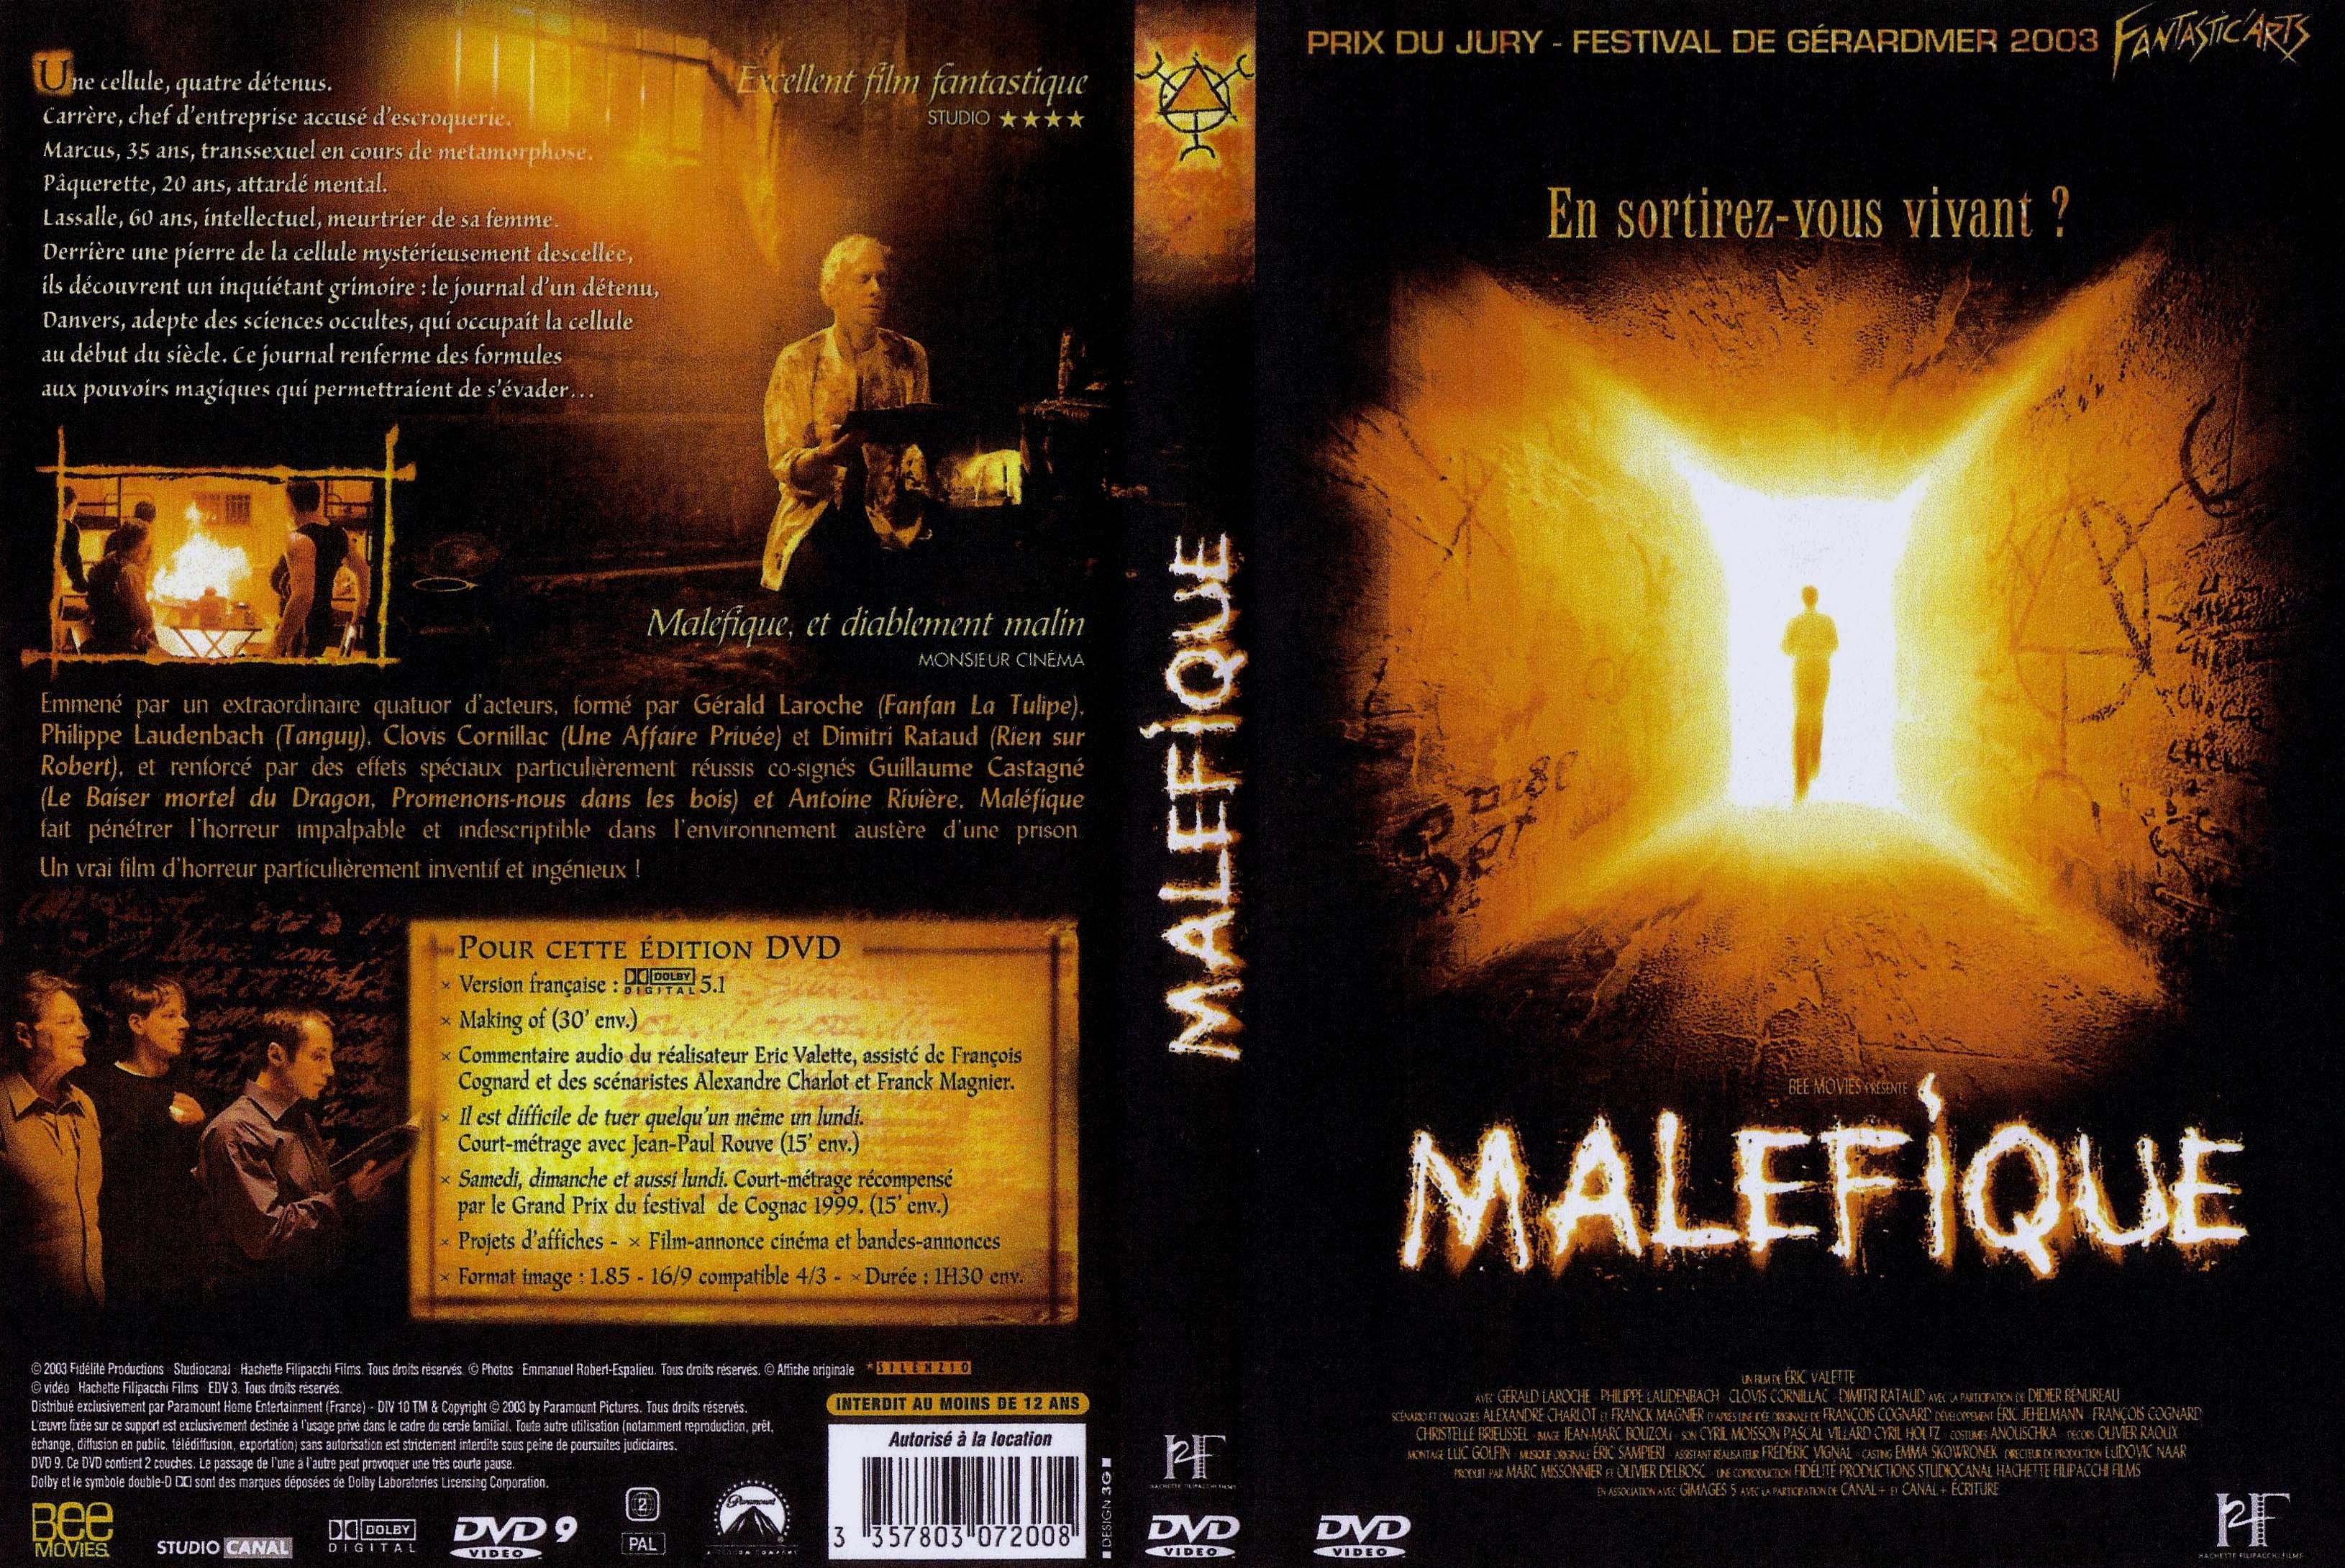 Jaquette DVD Malefique